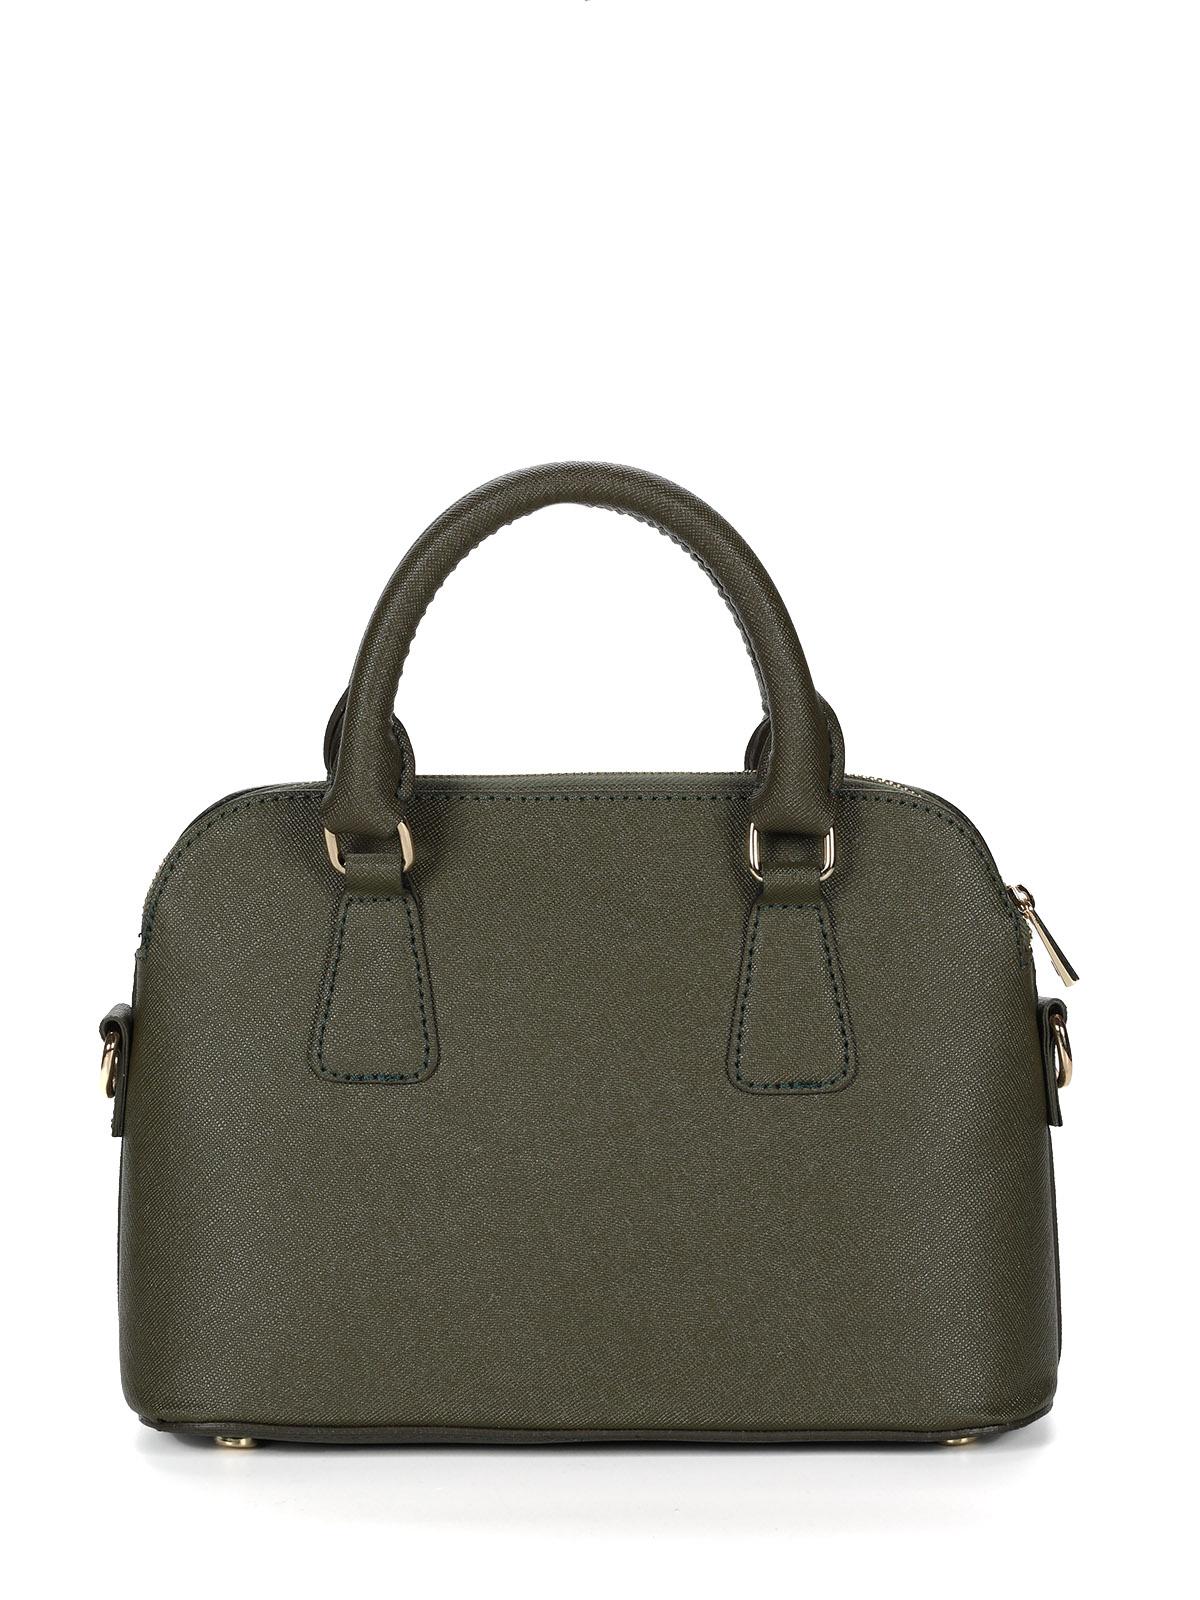 Женская сумка Laura Ashley, зеленая, цвет зеленый, размер ONE SIZE - фото 3